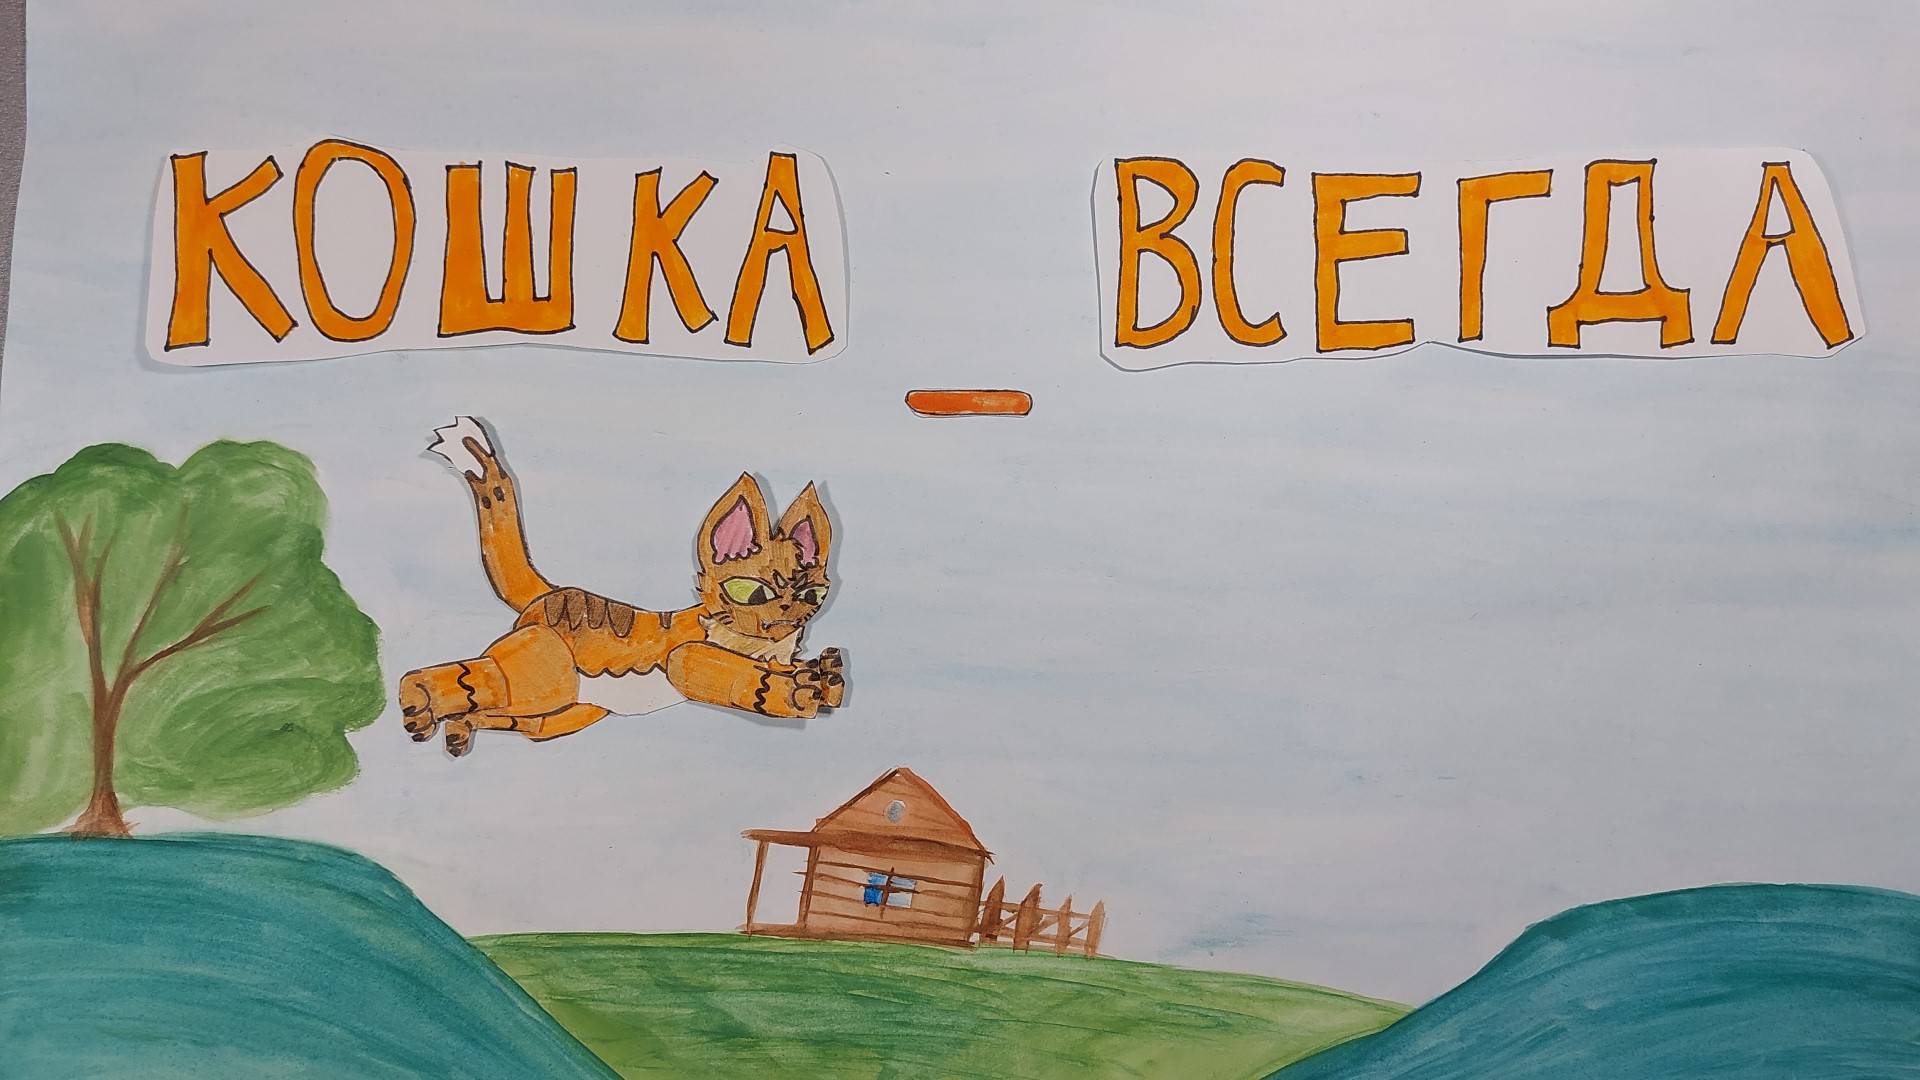 Кошка - всегда кошка. Перекладной мультфильм, созданный по народной вьетнамской сказке